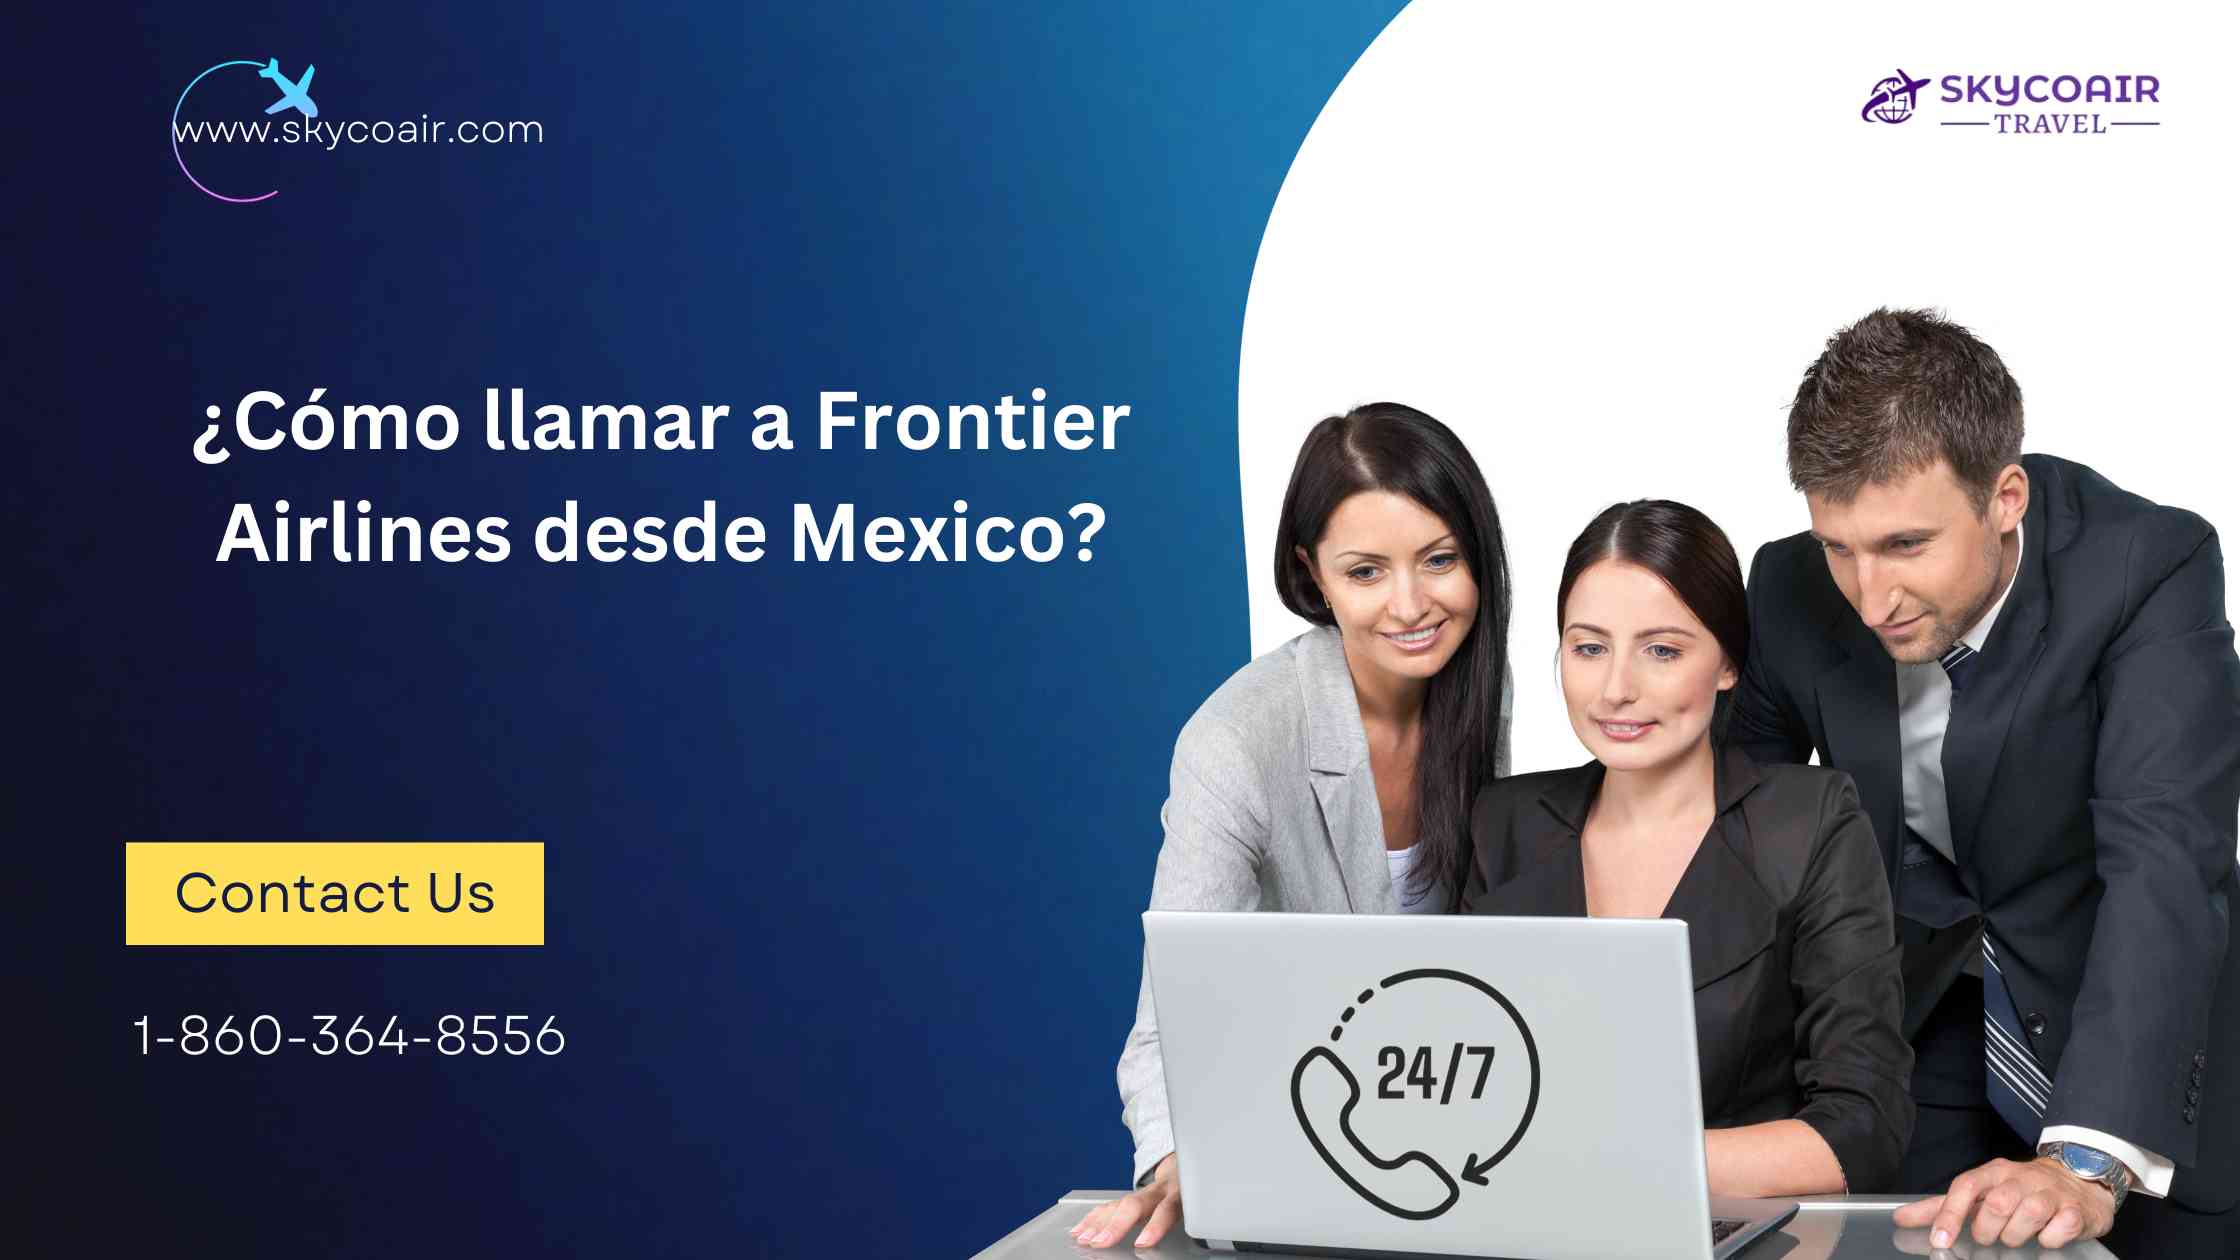 ¿Cómo llamar a Frontier Airlines desde Mexico?